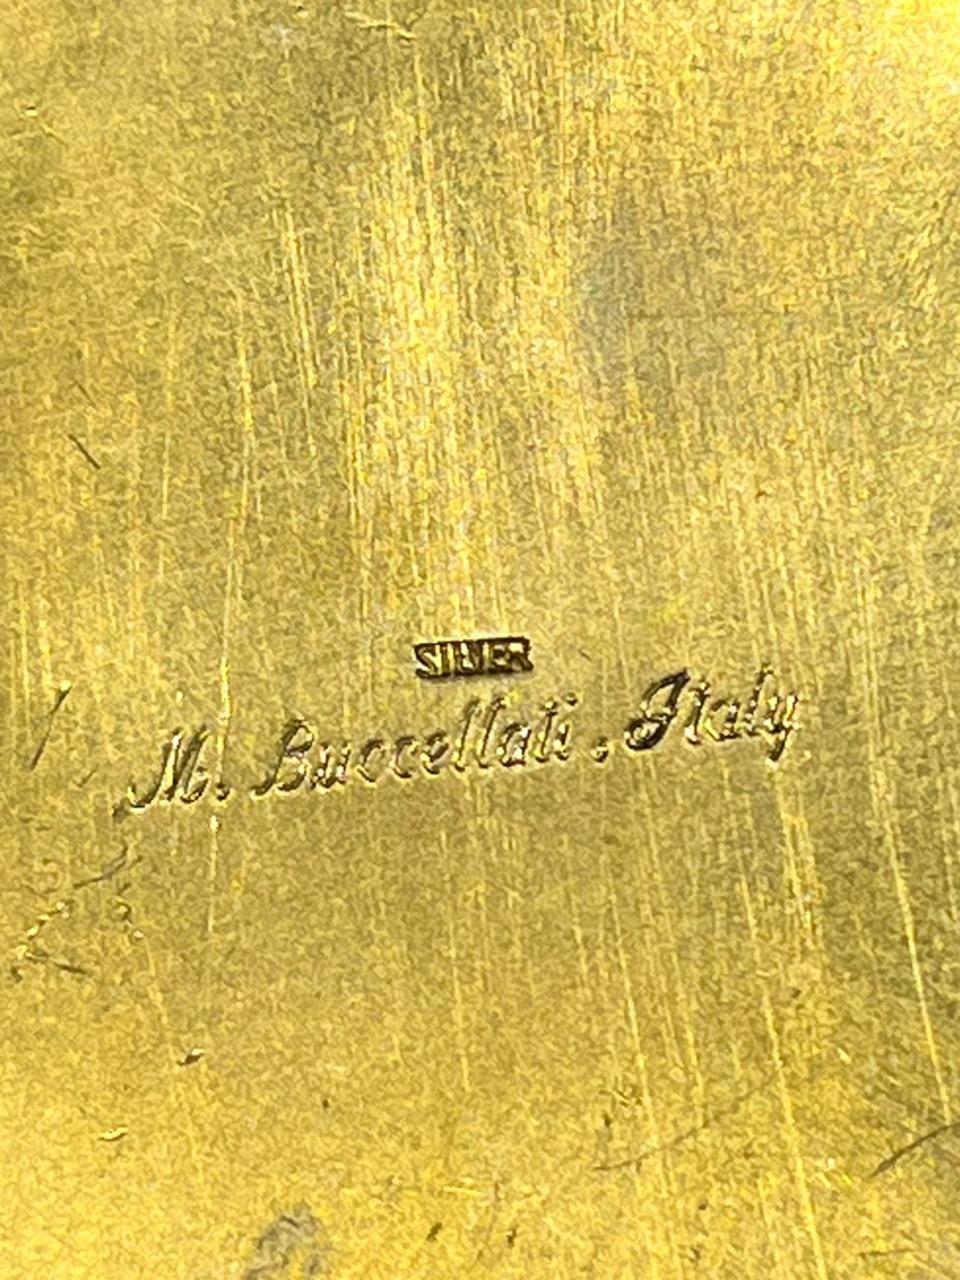 Argent sterling Pot en argent doré et émaillé représentant un perroquet, Mario Buccellati, 20e siècle